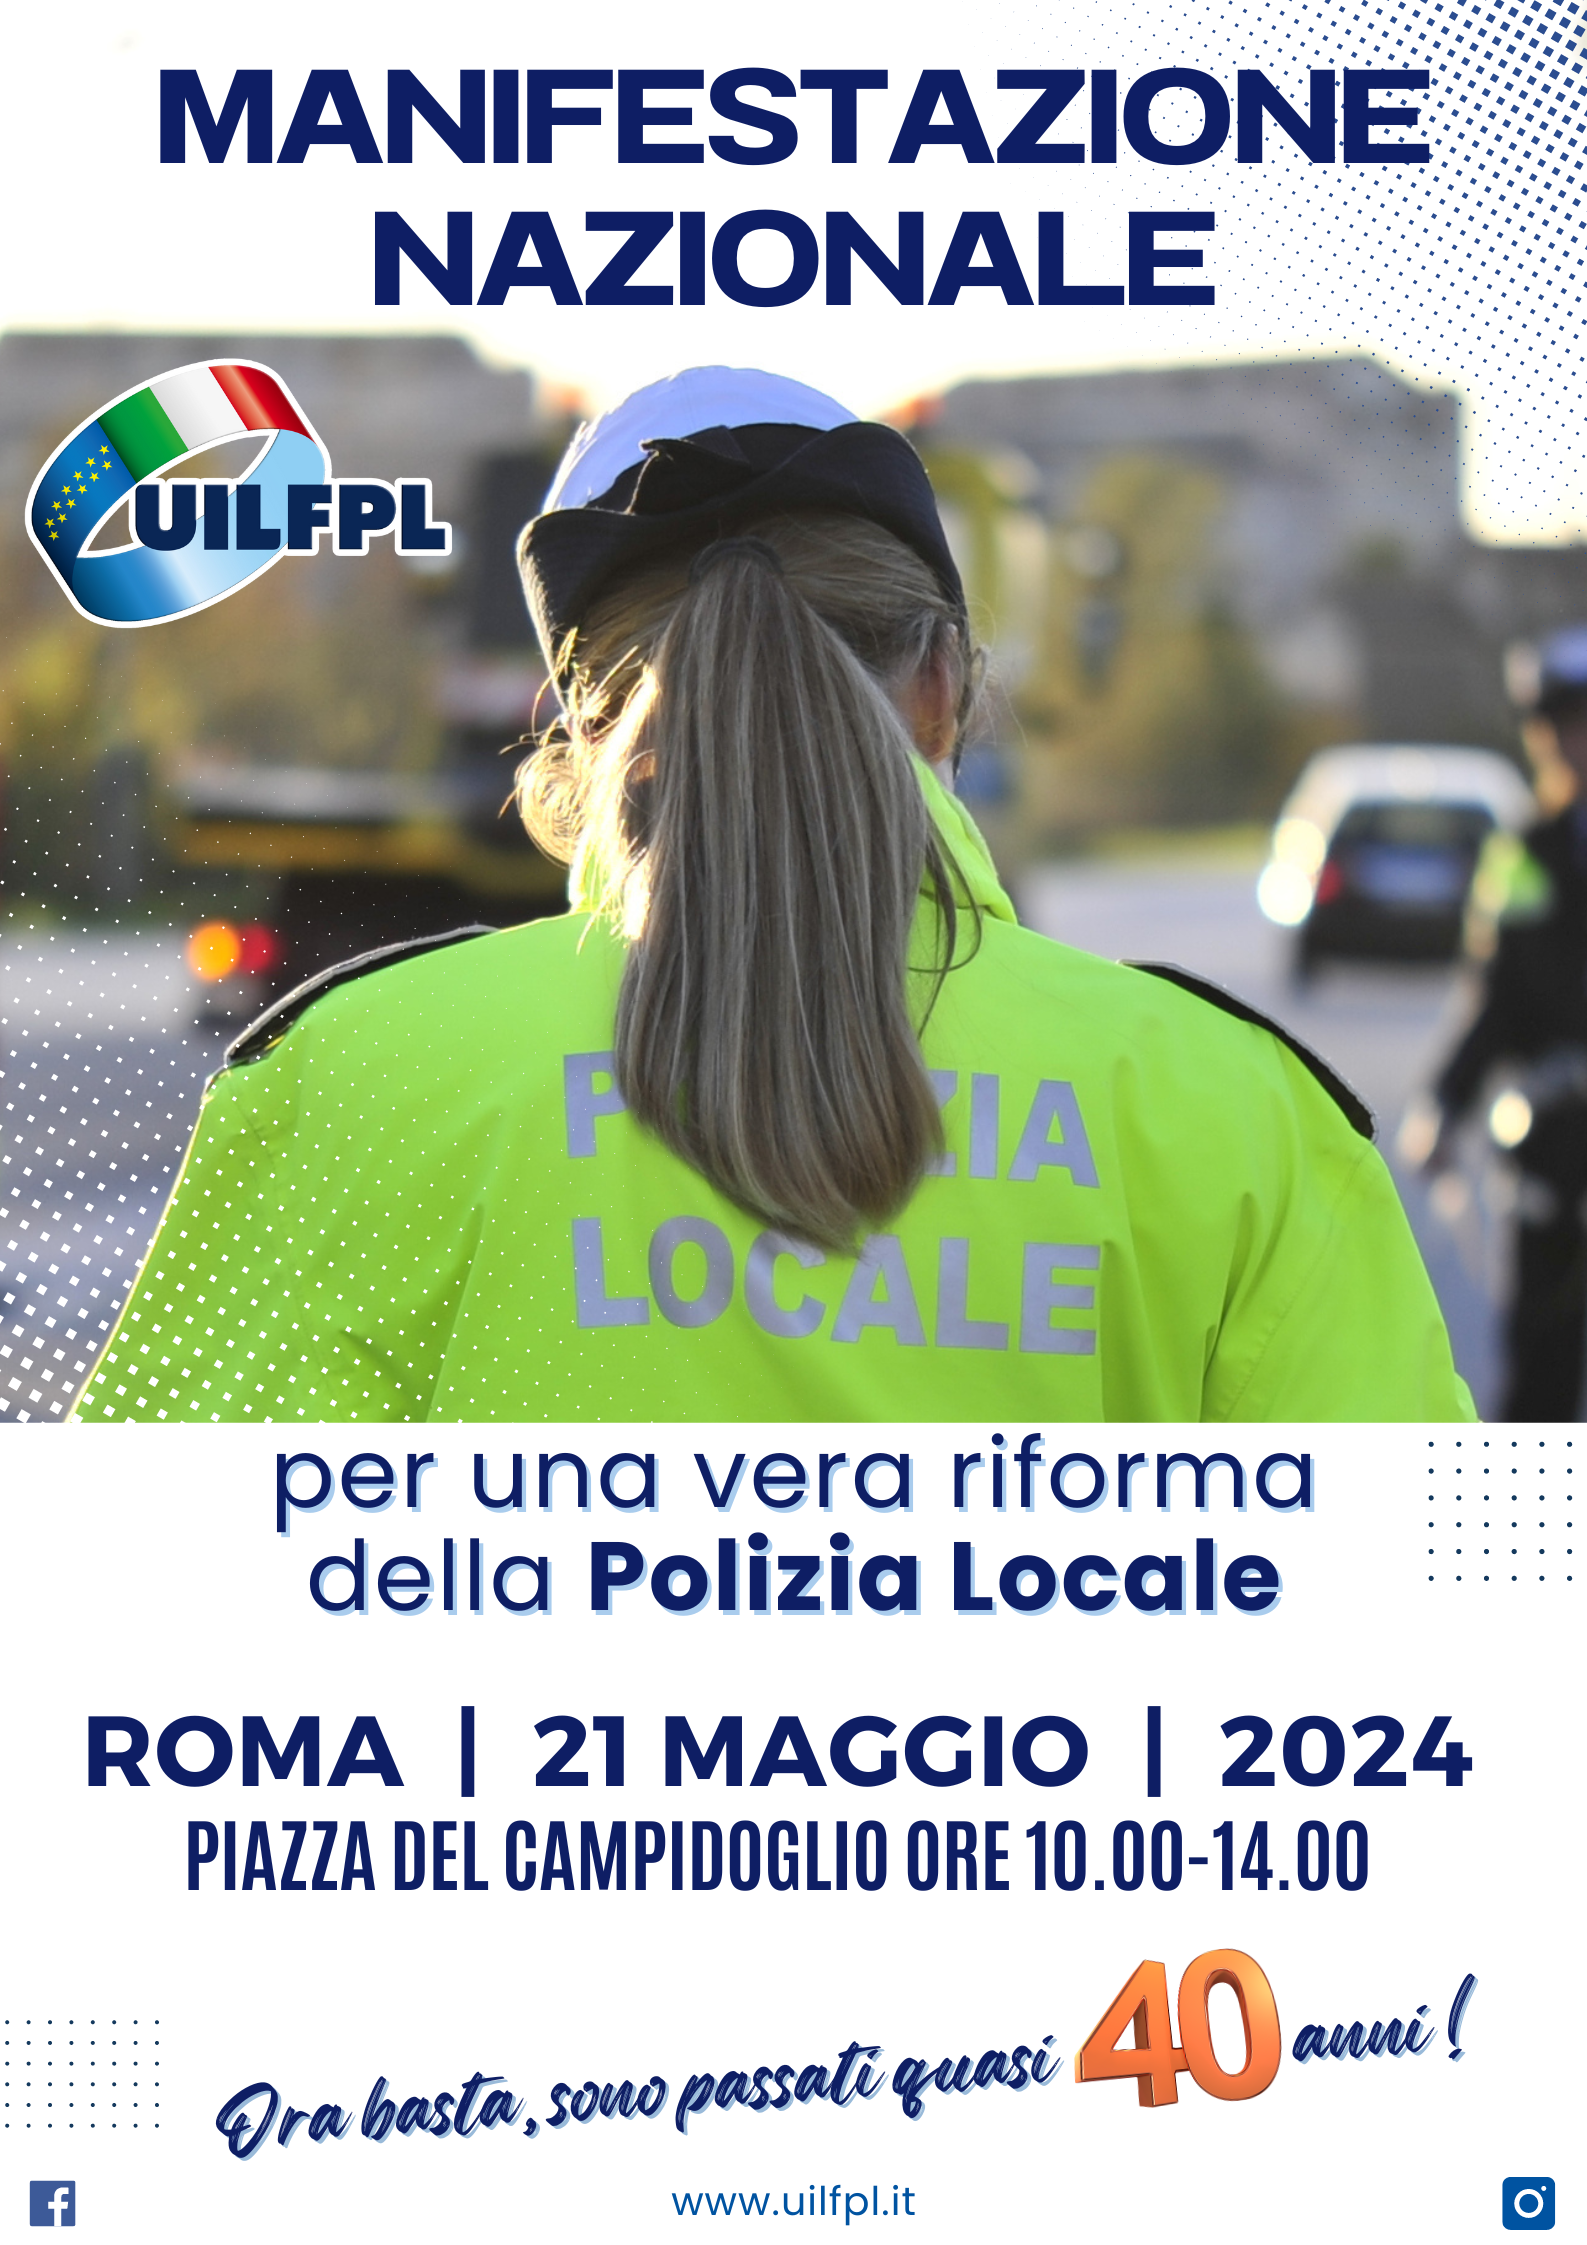 Roma, 21 maggio 2024: manifestazione nazionale per una reale riforma della polizia locale...